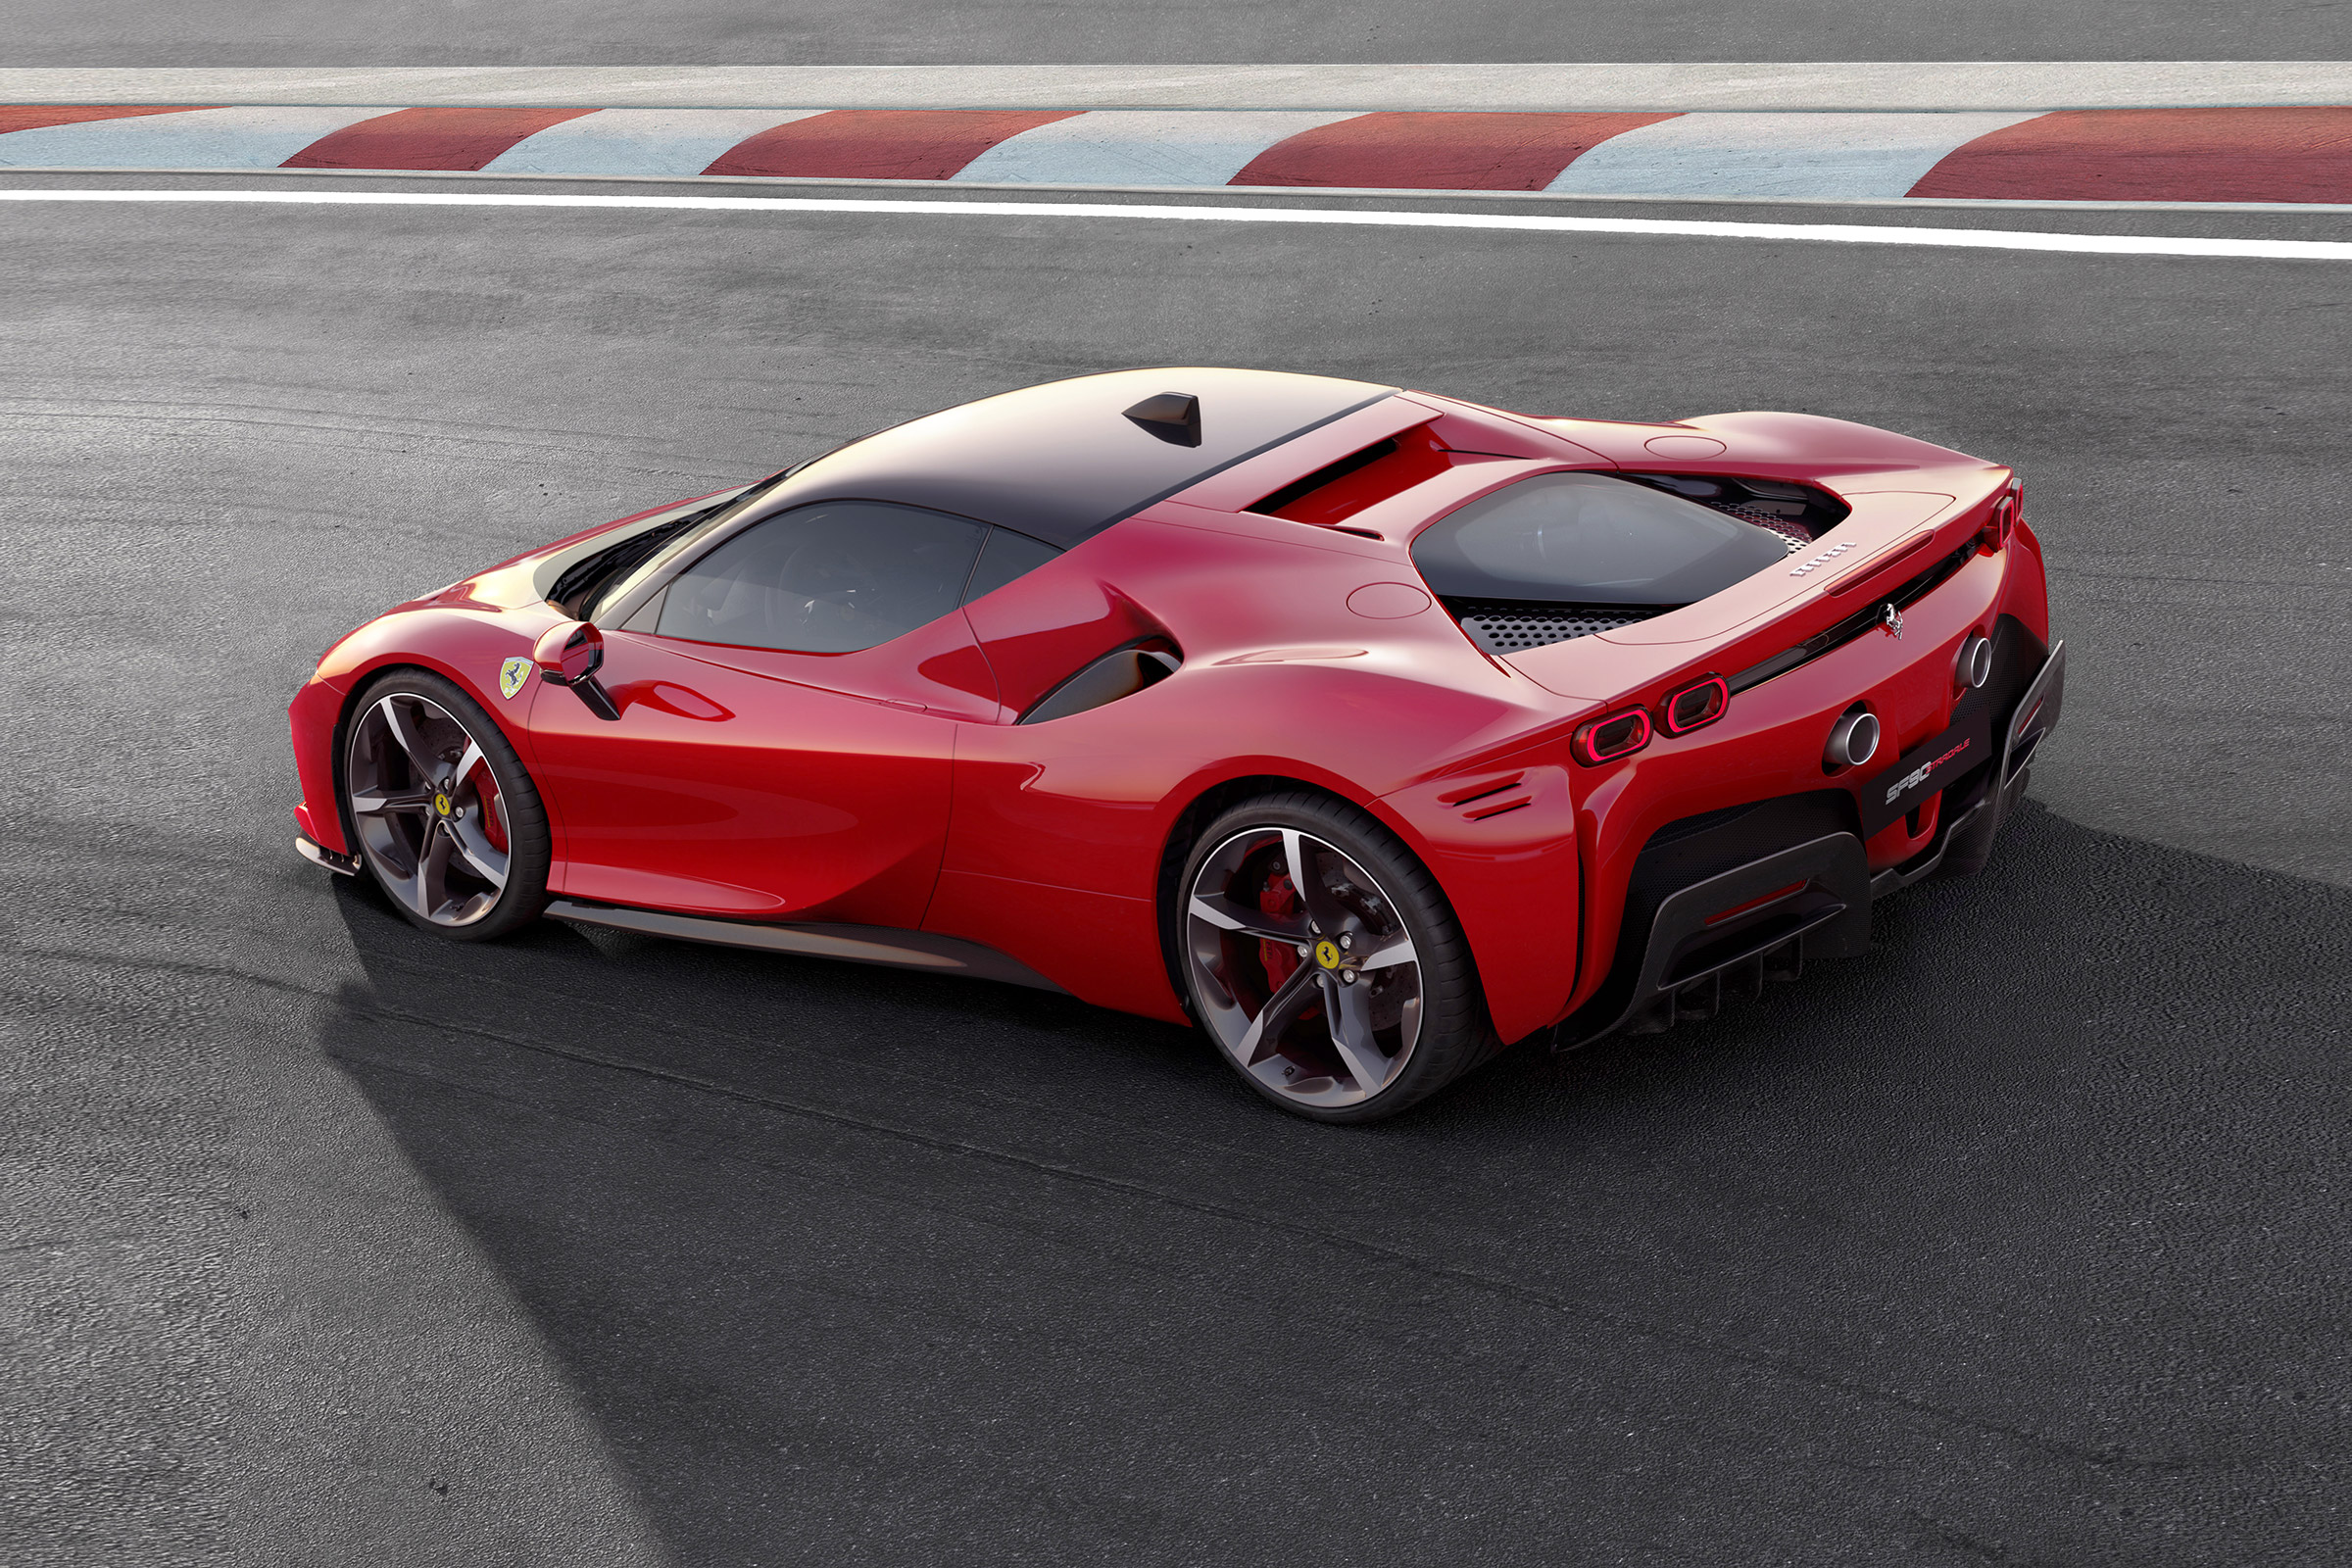 All New 986bhp Ferrari Sf90 Stradale Supercar Revealed Evo